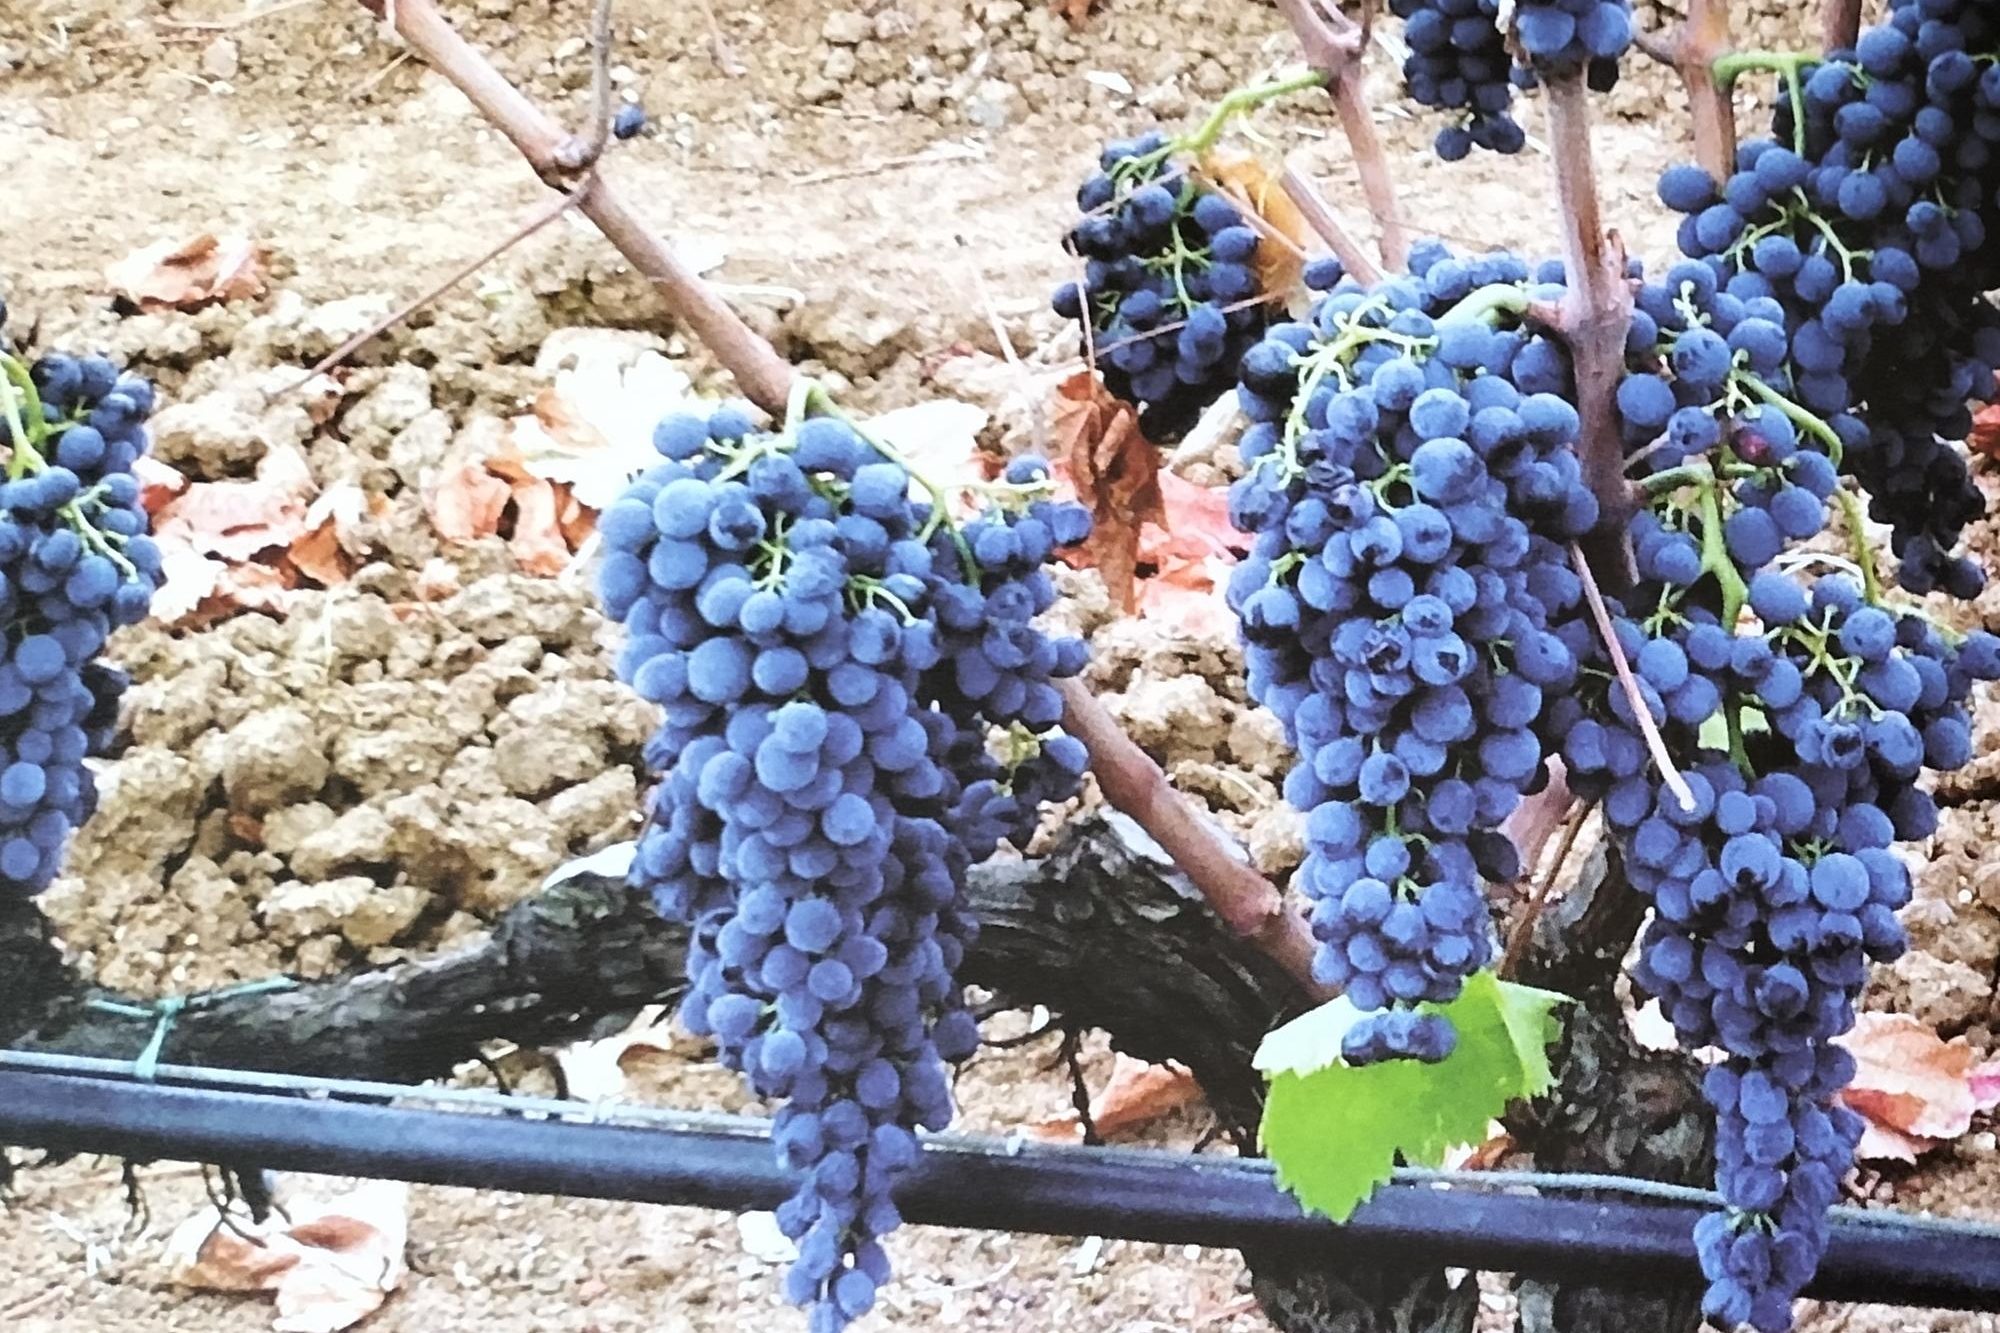 Fra vigne antiche e moderne, Sulcis &quot;re&quot; del vino a caccia di personale